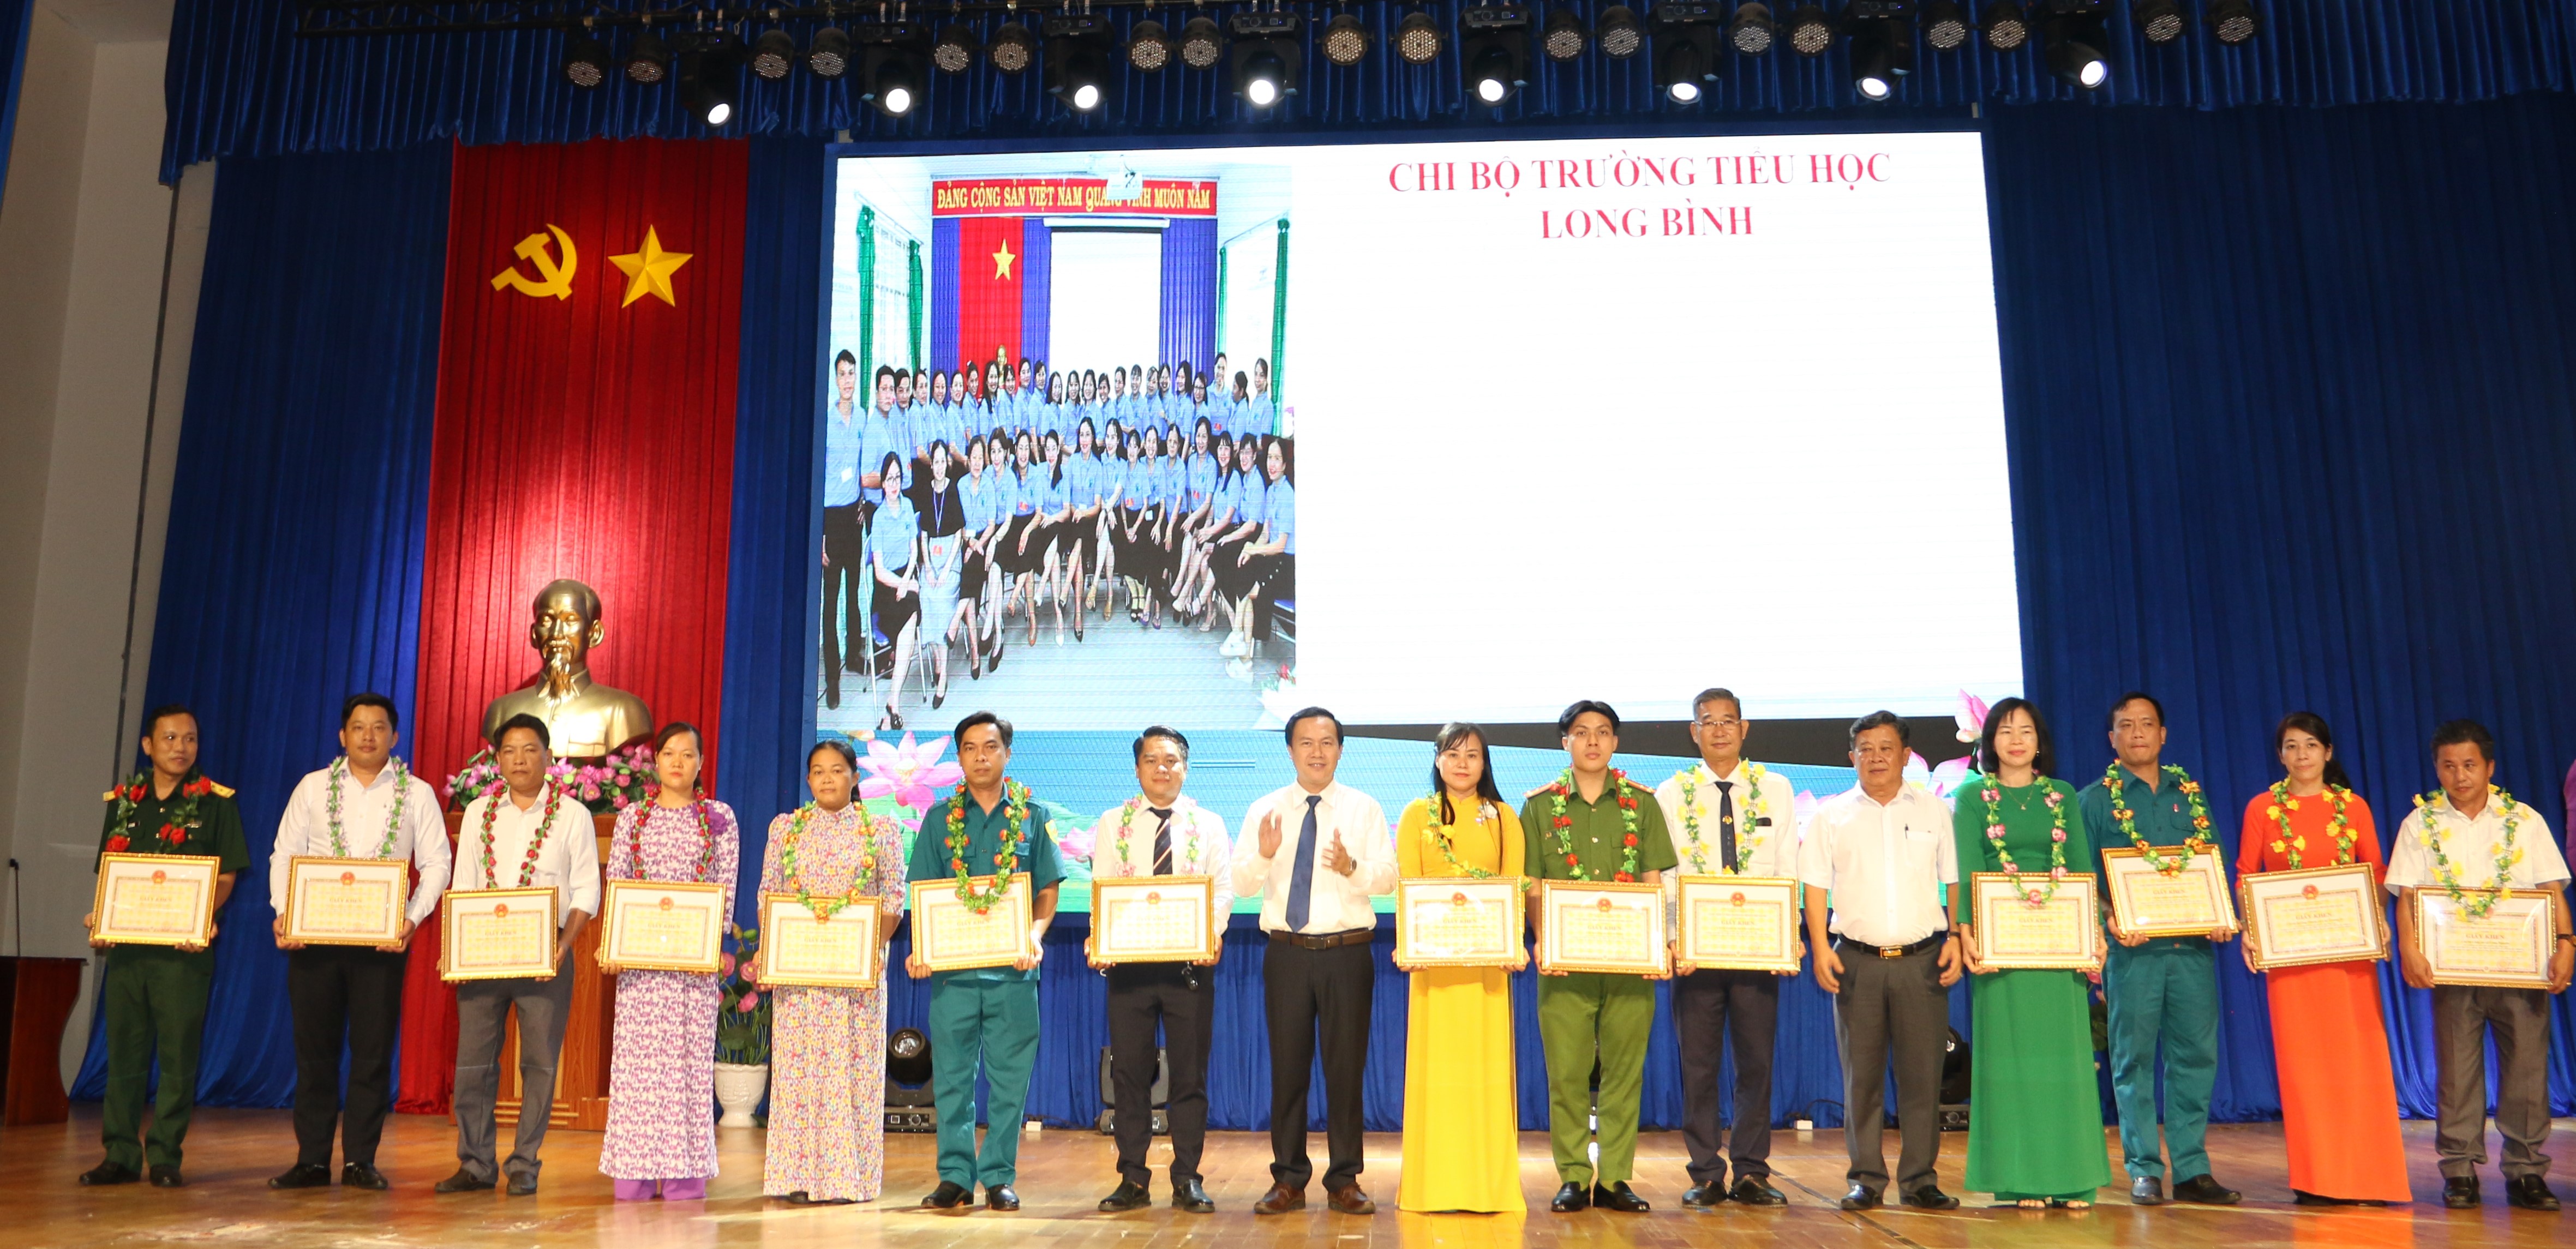 Huyện ủy Bàu Bàng sơ kết 3 năm thực hiện Kết luận số 01-KL/TW của Bộ Chính trị khóa XII “về đẩy mạnh học tập và làm theo tư tưởng, đạo đức, phong cách Hồ Chí Minh” (giai đoạn 2021 - 2023)